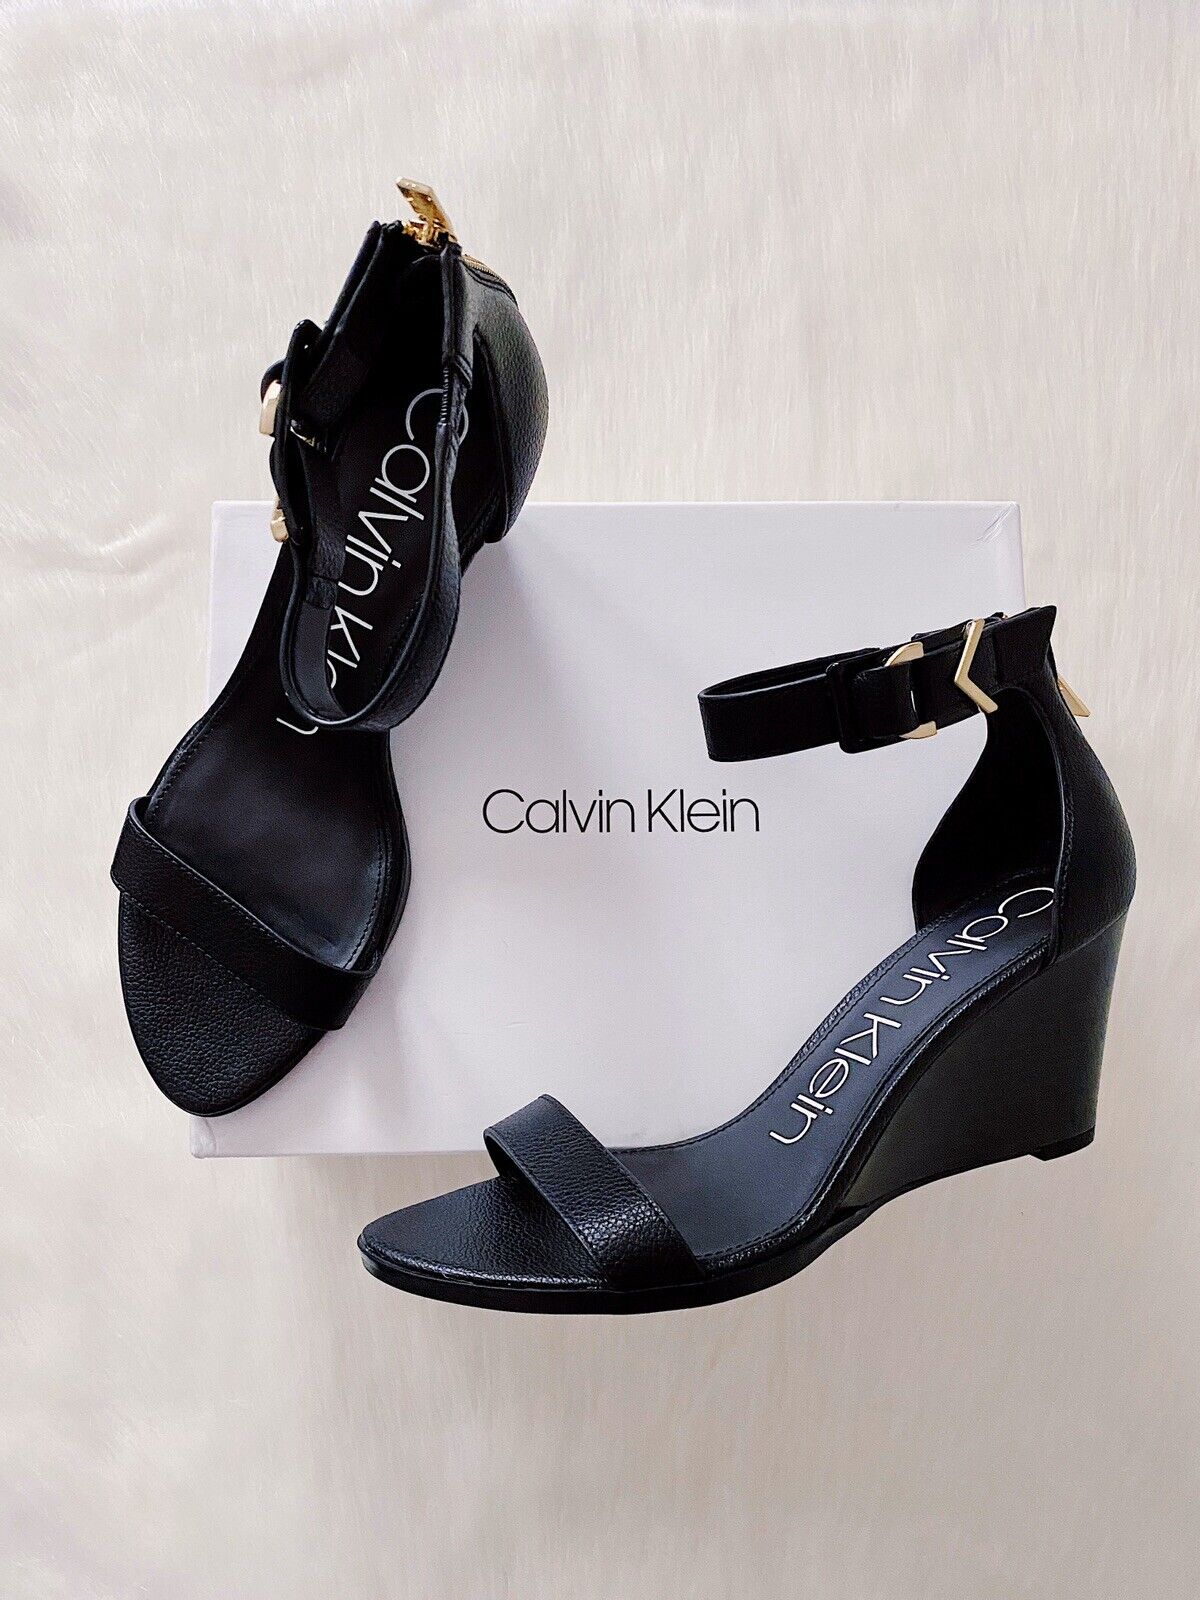 ✨New CALVIN KLEIN Wilhelmina Leather Wedge Sandals Black Womens Size 9.5M $129